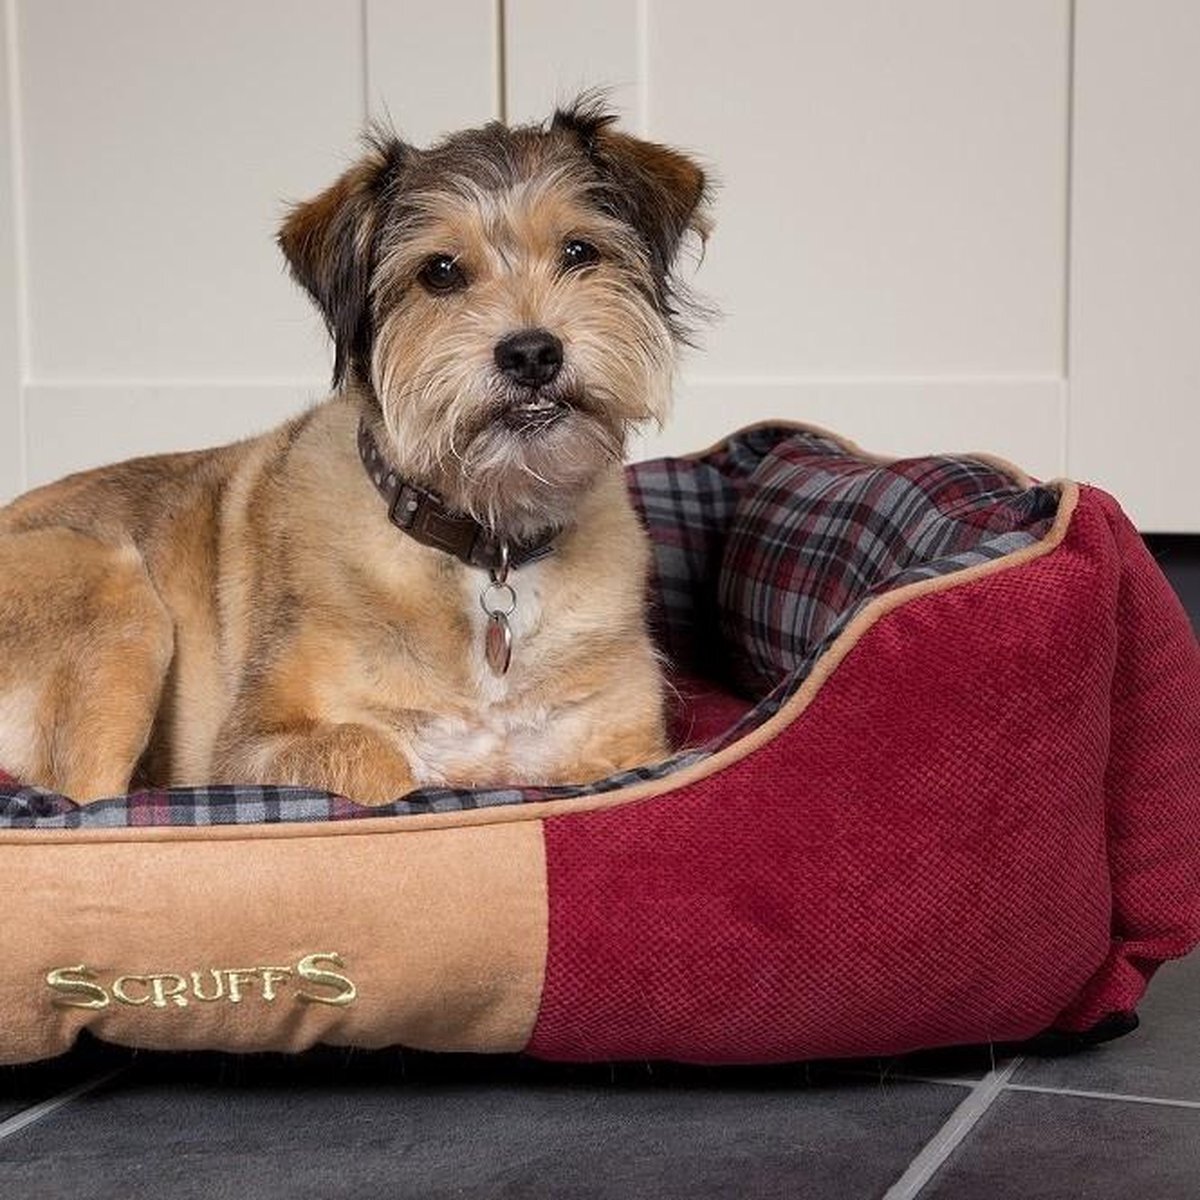 Scruffs Stevige Hondenmand van Hoogwaardige Chenille stof met anti-slip onderzijde - Highland Box Bed - Blauw, Rood of Grijs in S/M/L/XL - Kleur: Grijs, Maat: Medium grijs